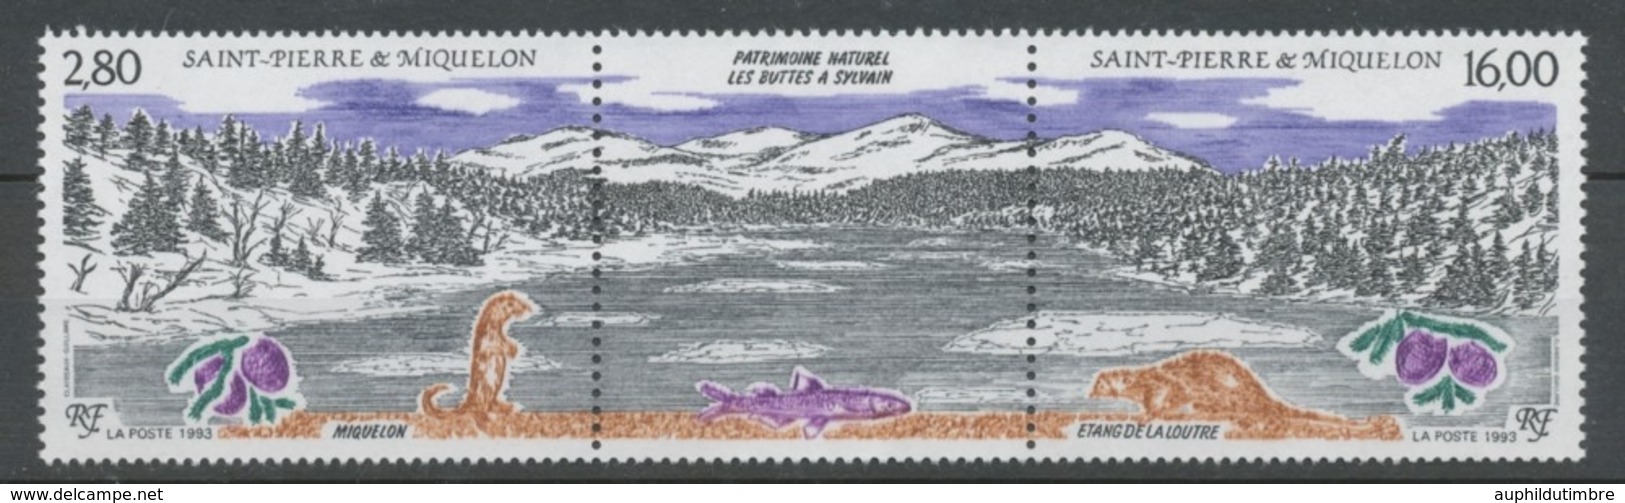 SPM  N°586A Patrimoine Naturel Des Iles St-Pierre-et-Miquelon Le Triptyque Avec Vignette Centrale ZC586A - Nuovi